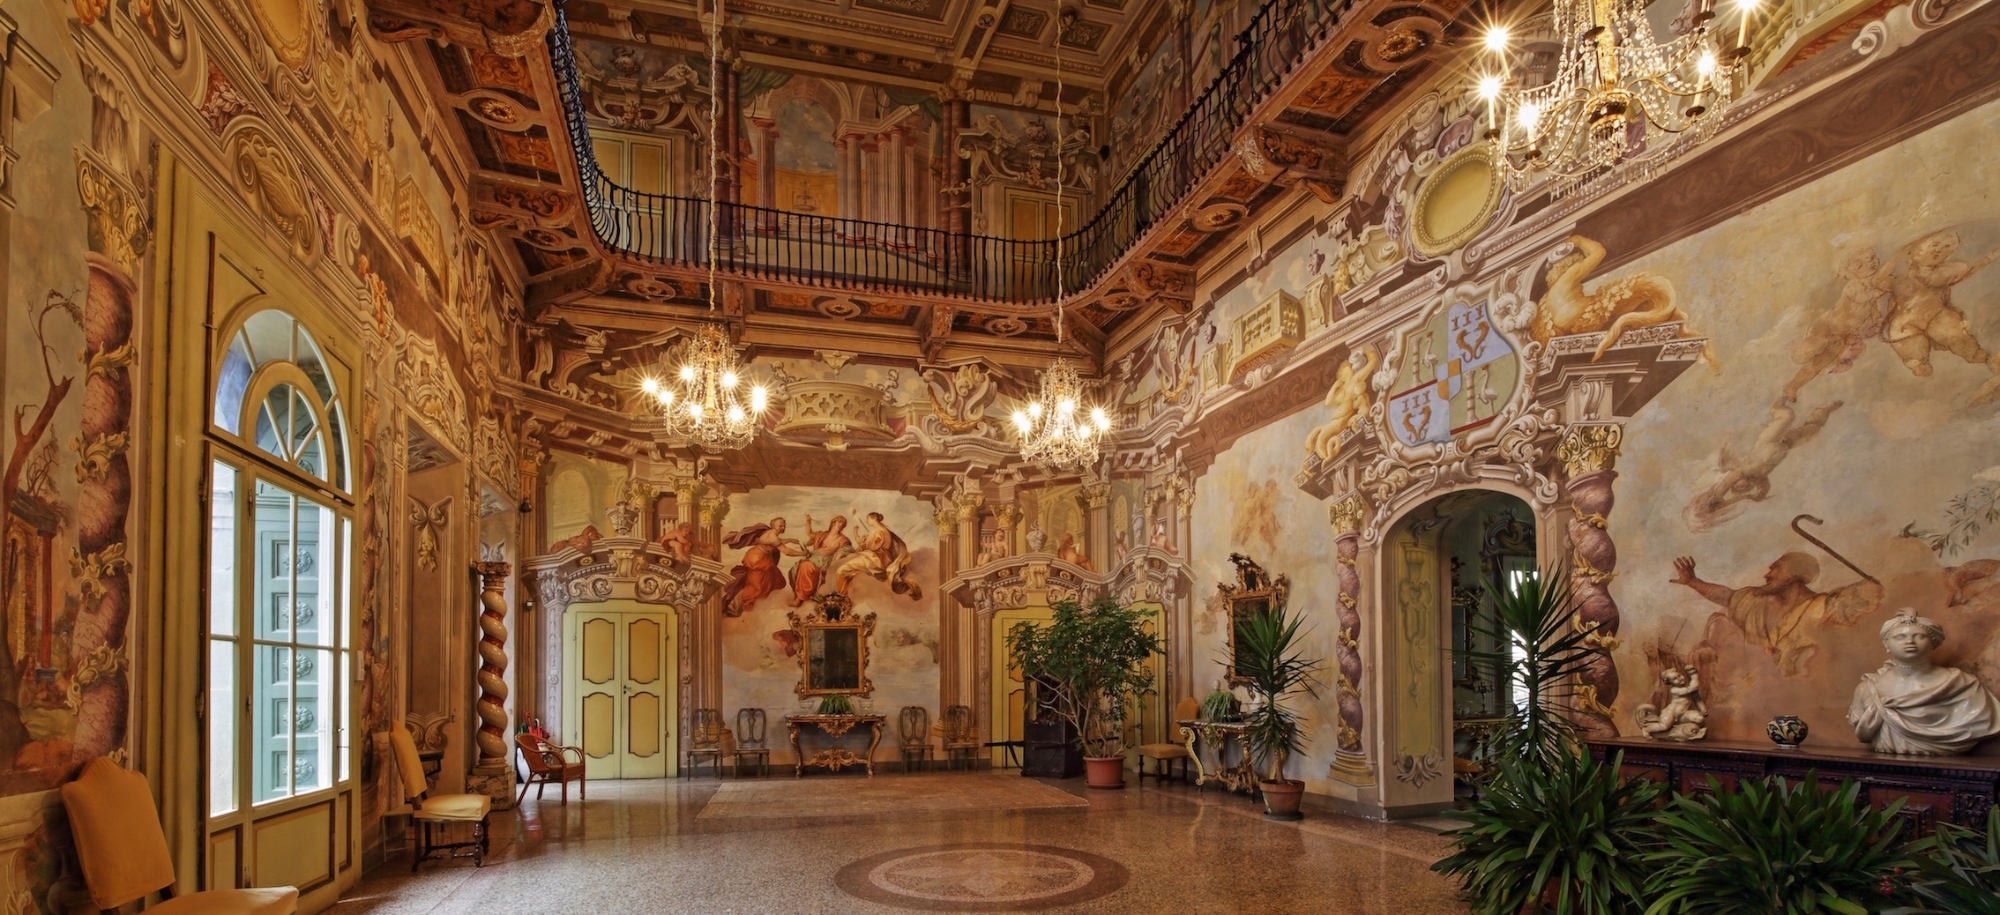 Central hall of Villa Dosi Delfini